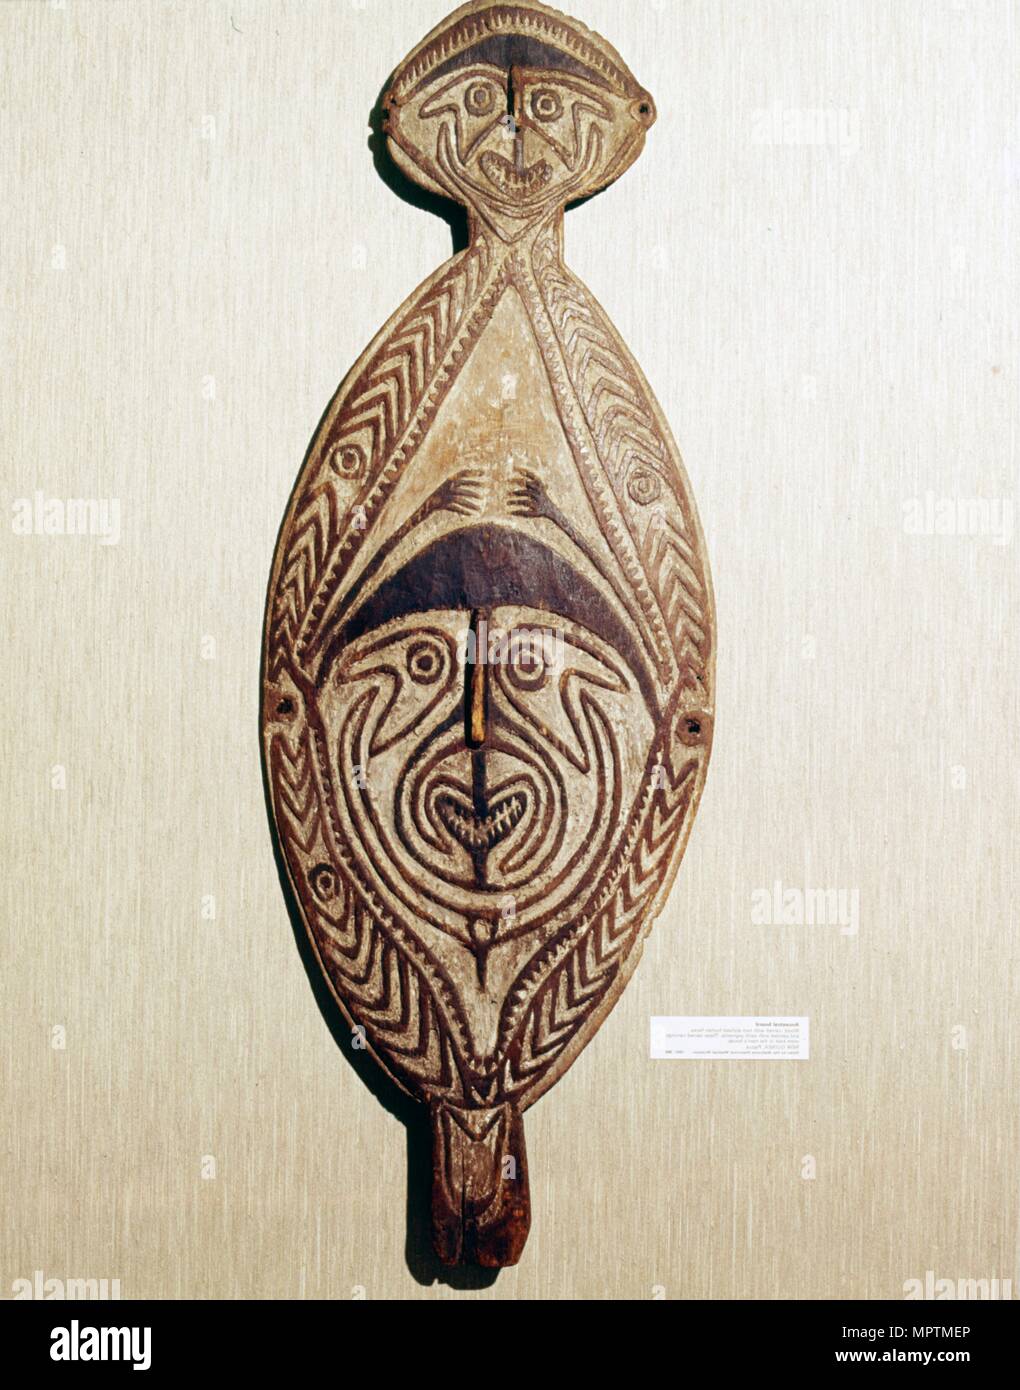 Conseil ancestral, bois sculpté avec deux visages humains. Artiste : Inconnu. Banque D'Images